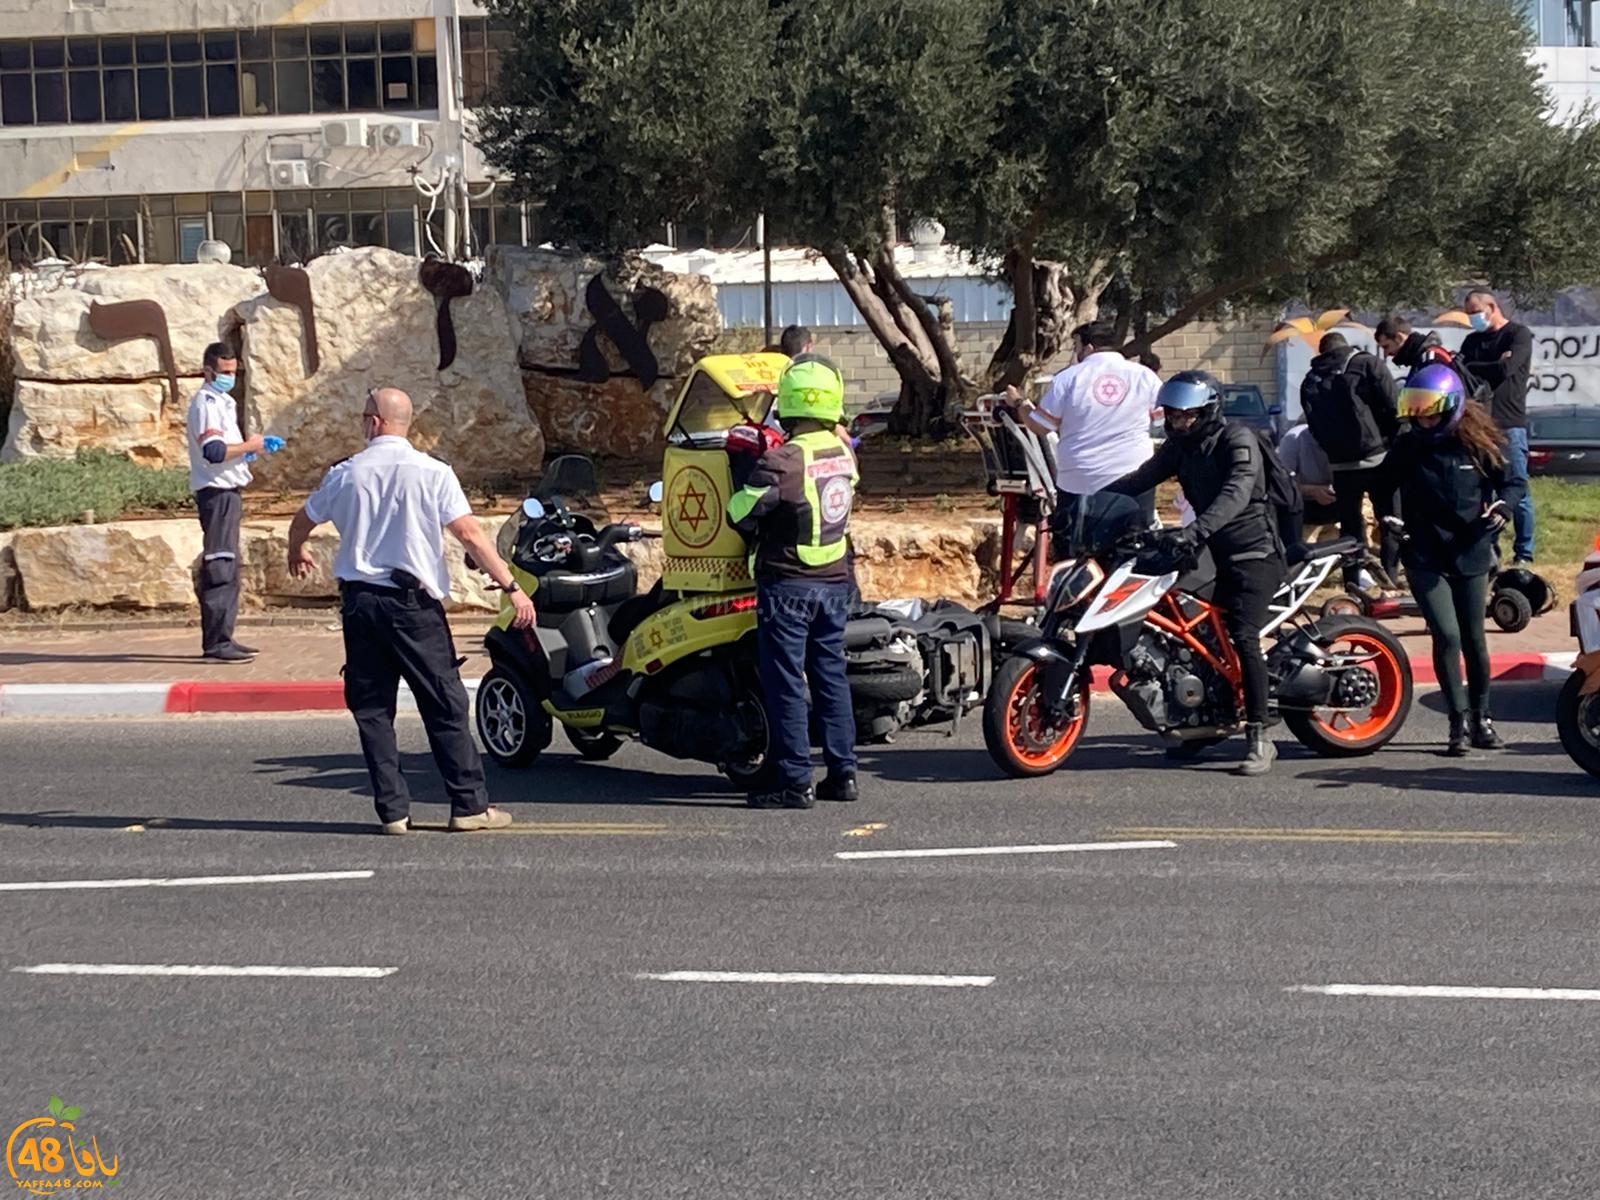  اصابة متوسطة لراكب دراجة نارية بحادث طرق شرق يافا 